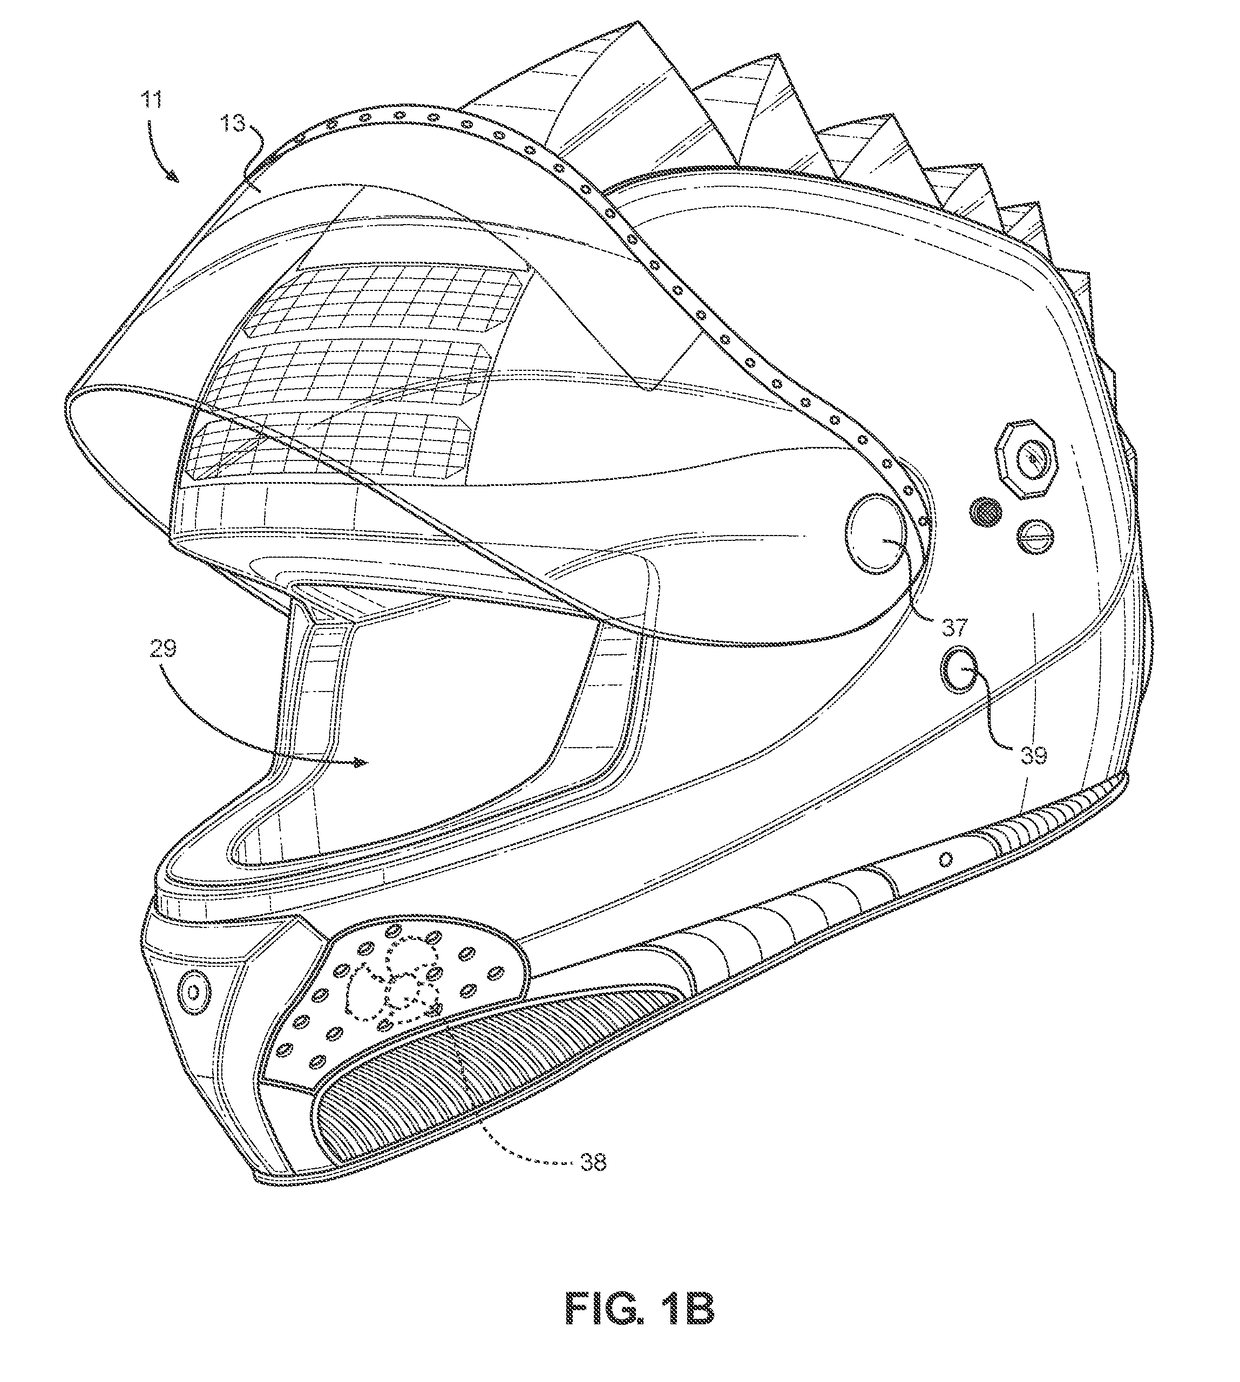 Electronic Motorcycle Helmet